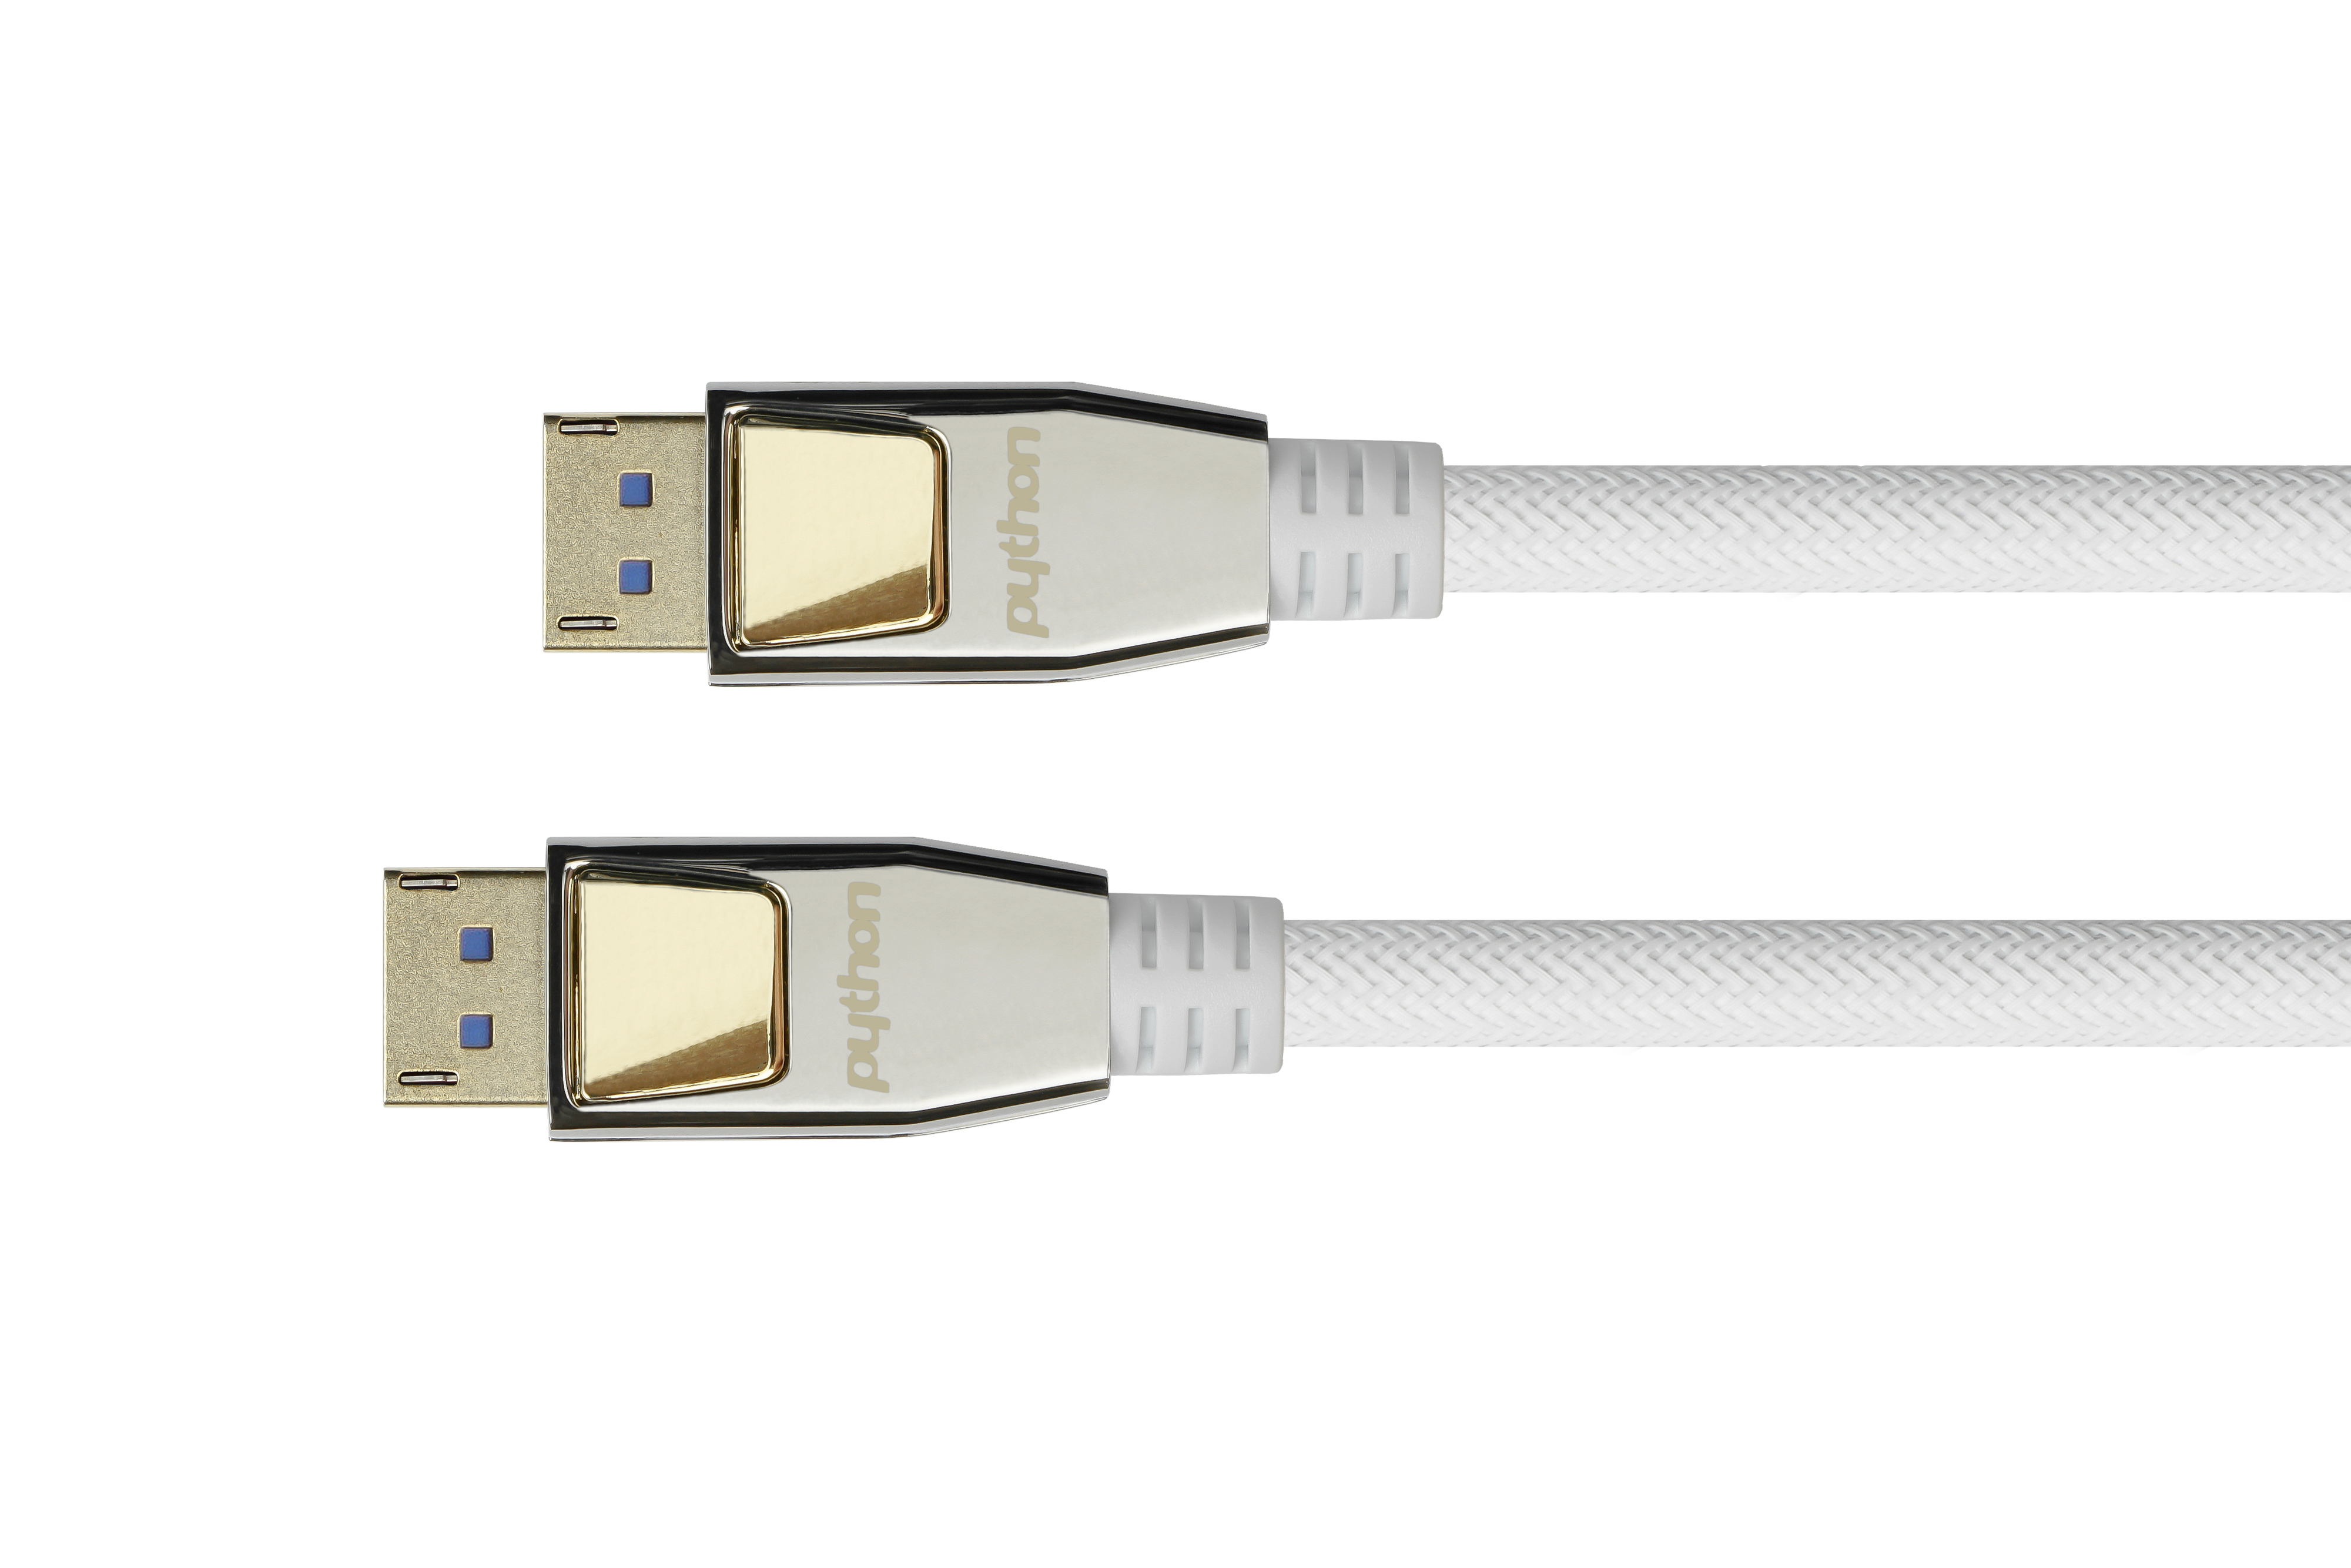 Anschlusskabel weiß, Nylongeflecht m Displayport, vergoldete CU, Kontakte, 2.0, 0,5m, 54 PYTHON Vollmetallstecker, Gbit/s, 0,5